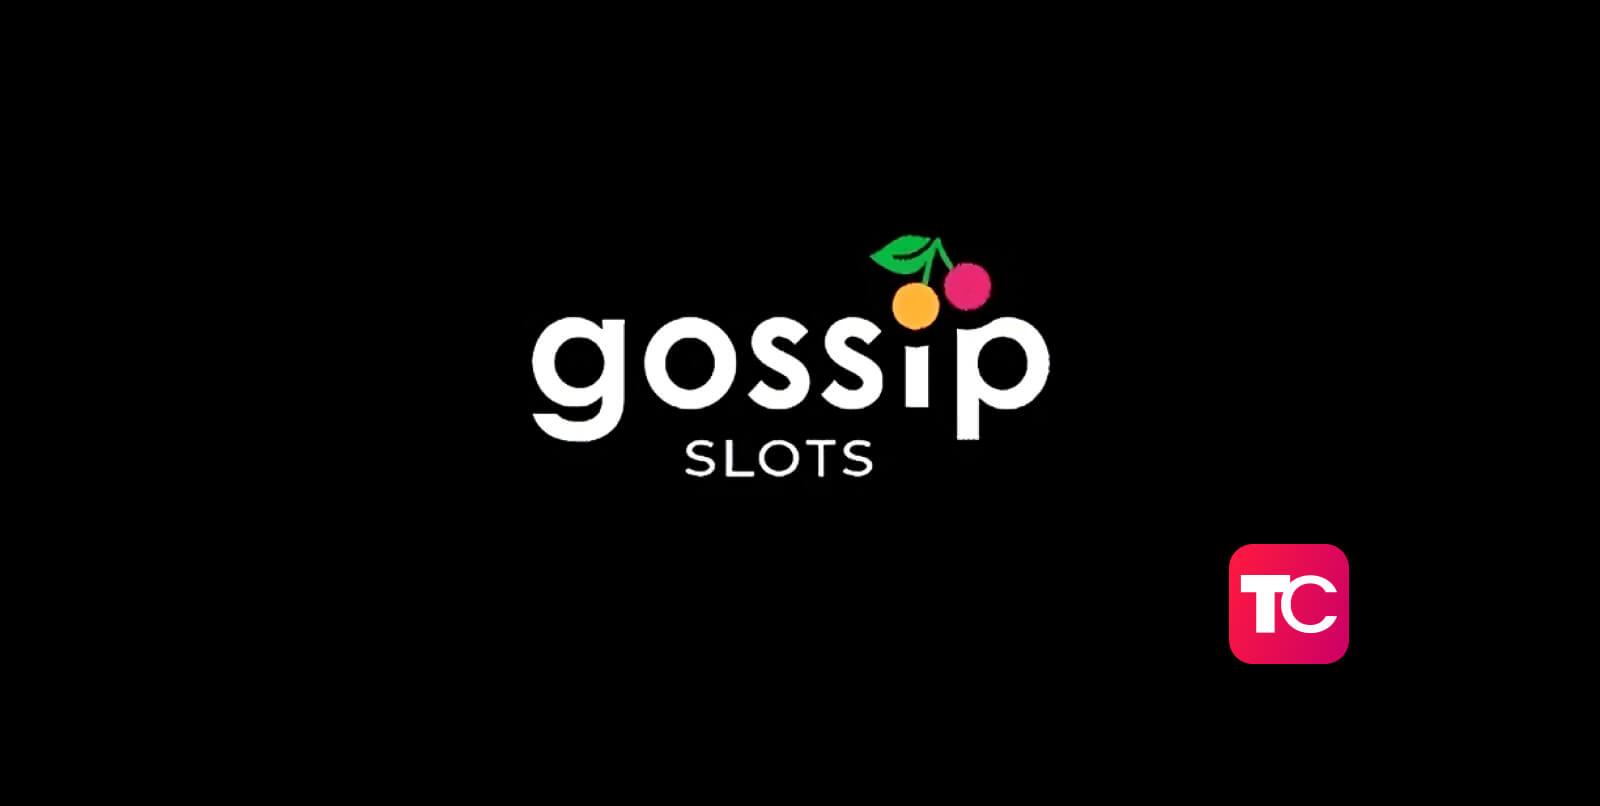 gossip slots casino welcome bonus casino review topcasinos